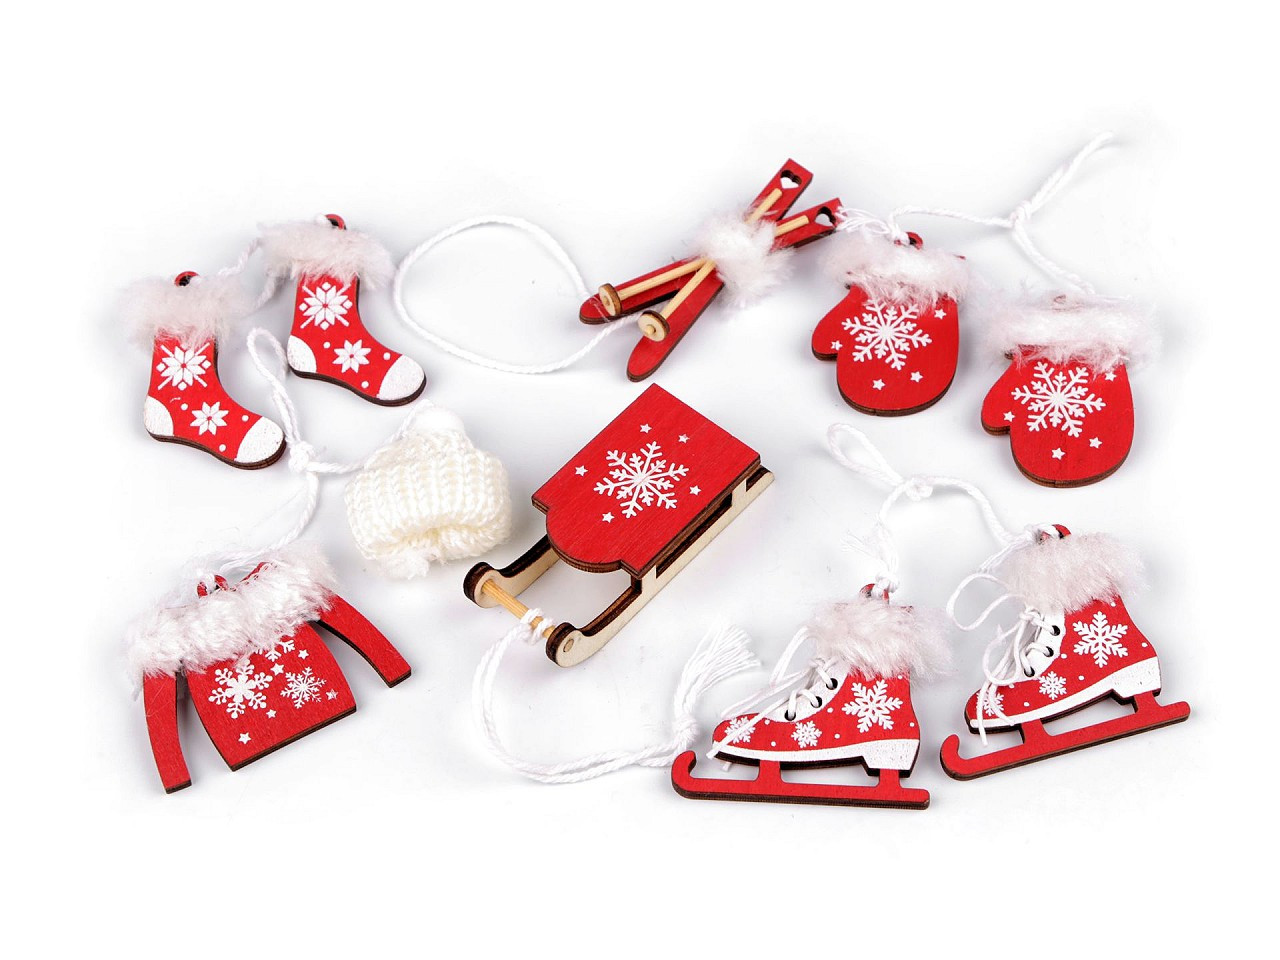 Vánoční dekorace - sáňky, lyže, brusle, čepice, bunda, rukavice, ponožky, barva 2 červená